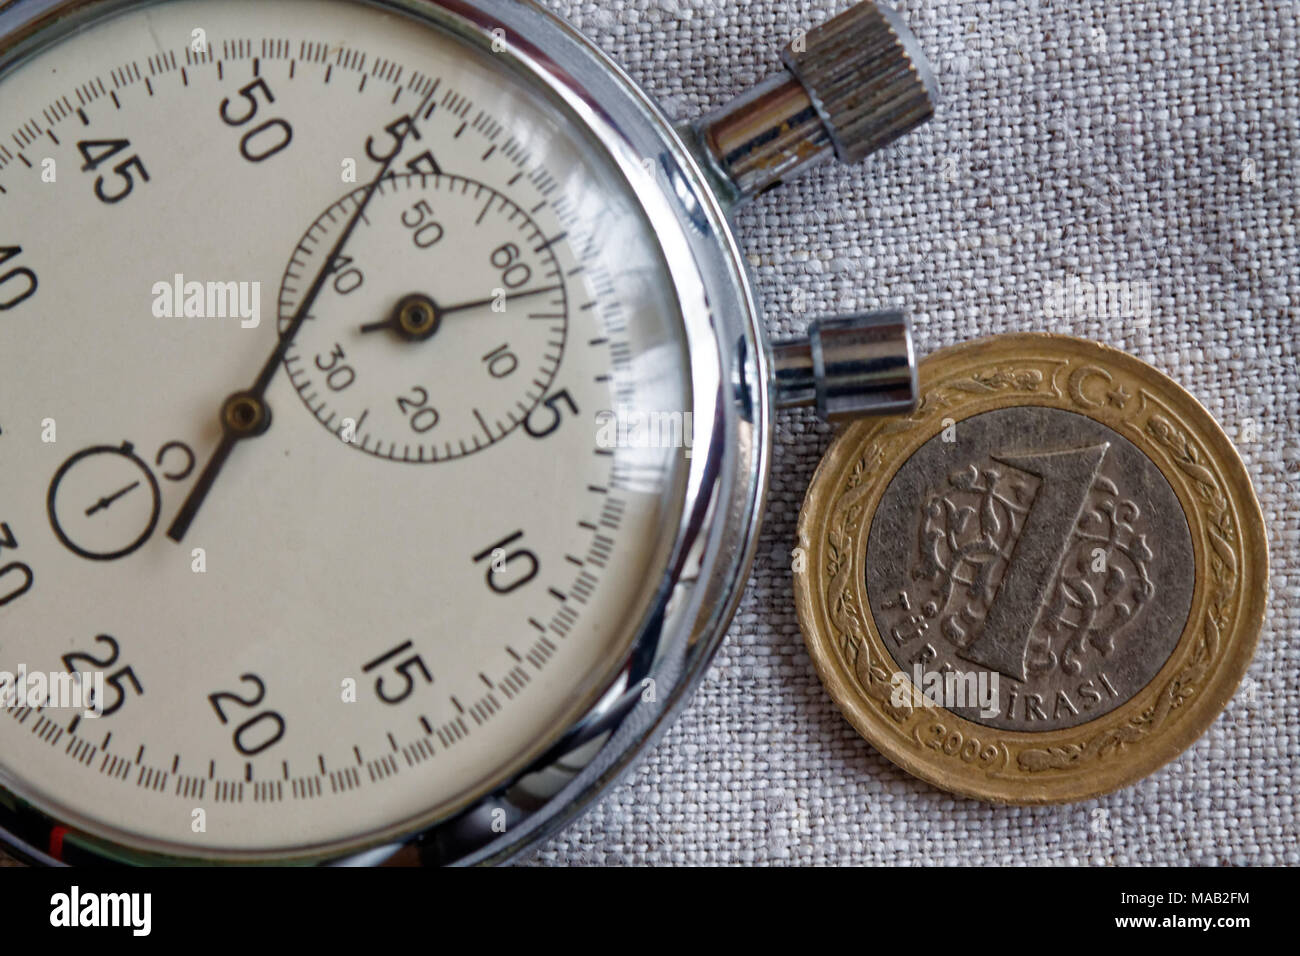 Coin turc avec une dénomination d'un cri et le chronomètre sur toile de lin gris - business background Banque D'Images